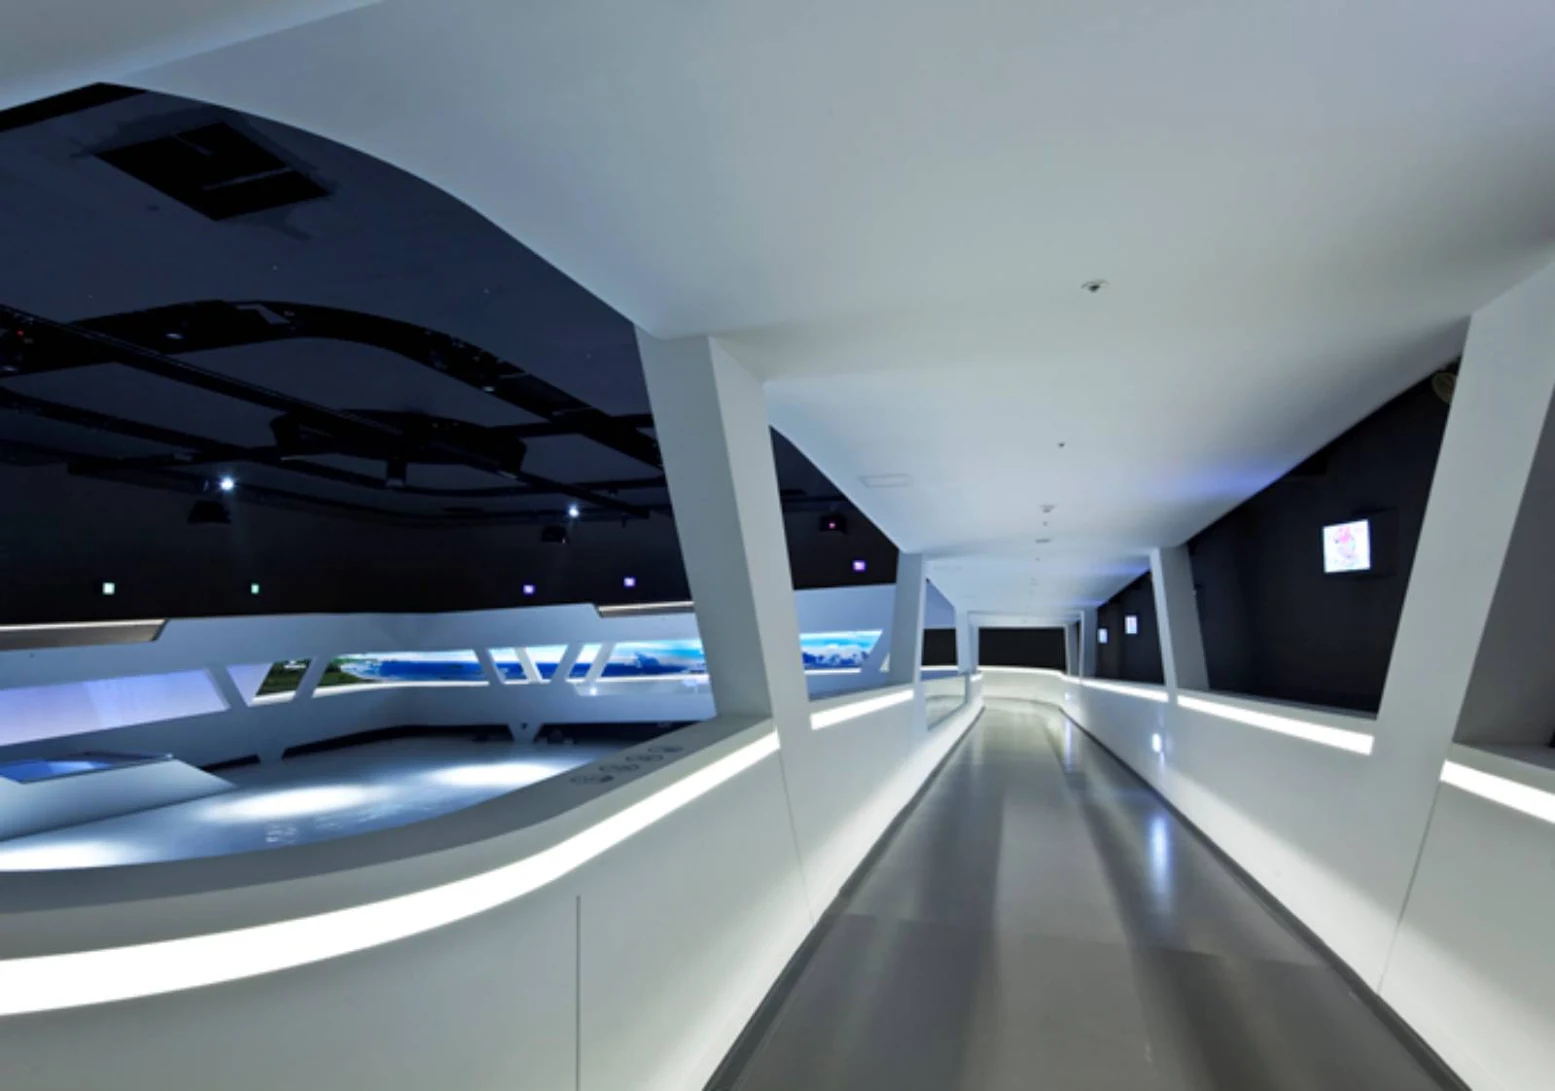 Yeosu Expo Samsung Pavilion by SAMOO